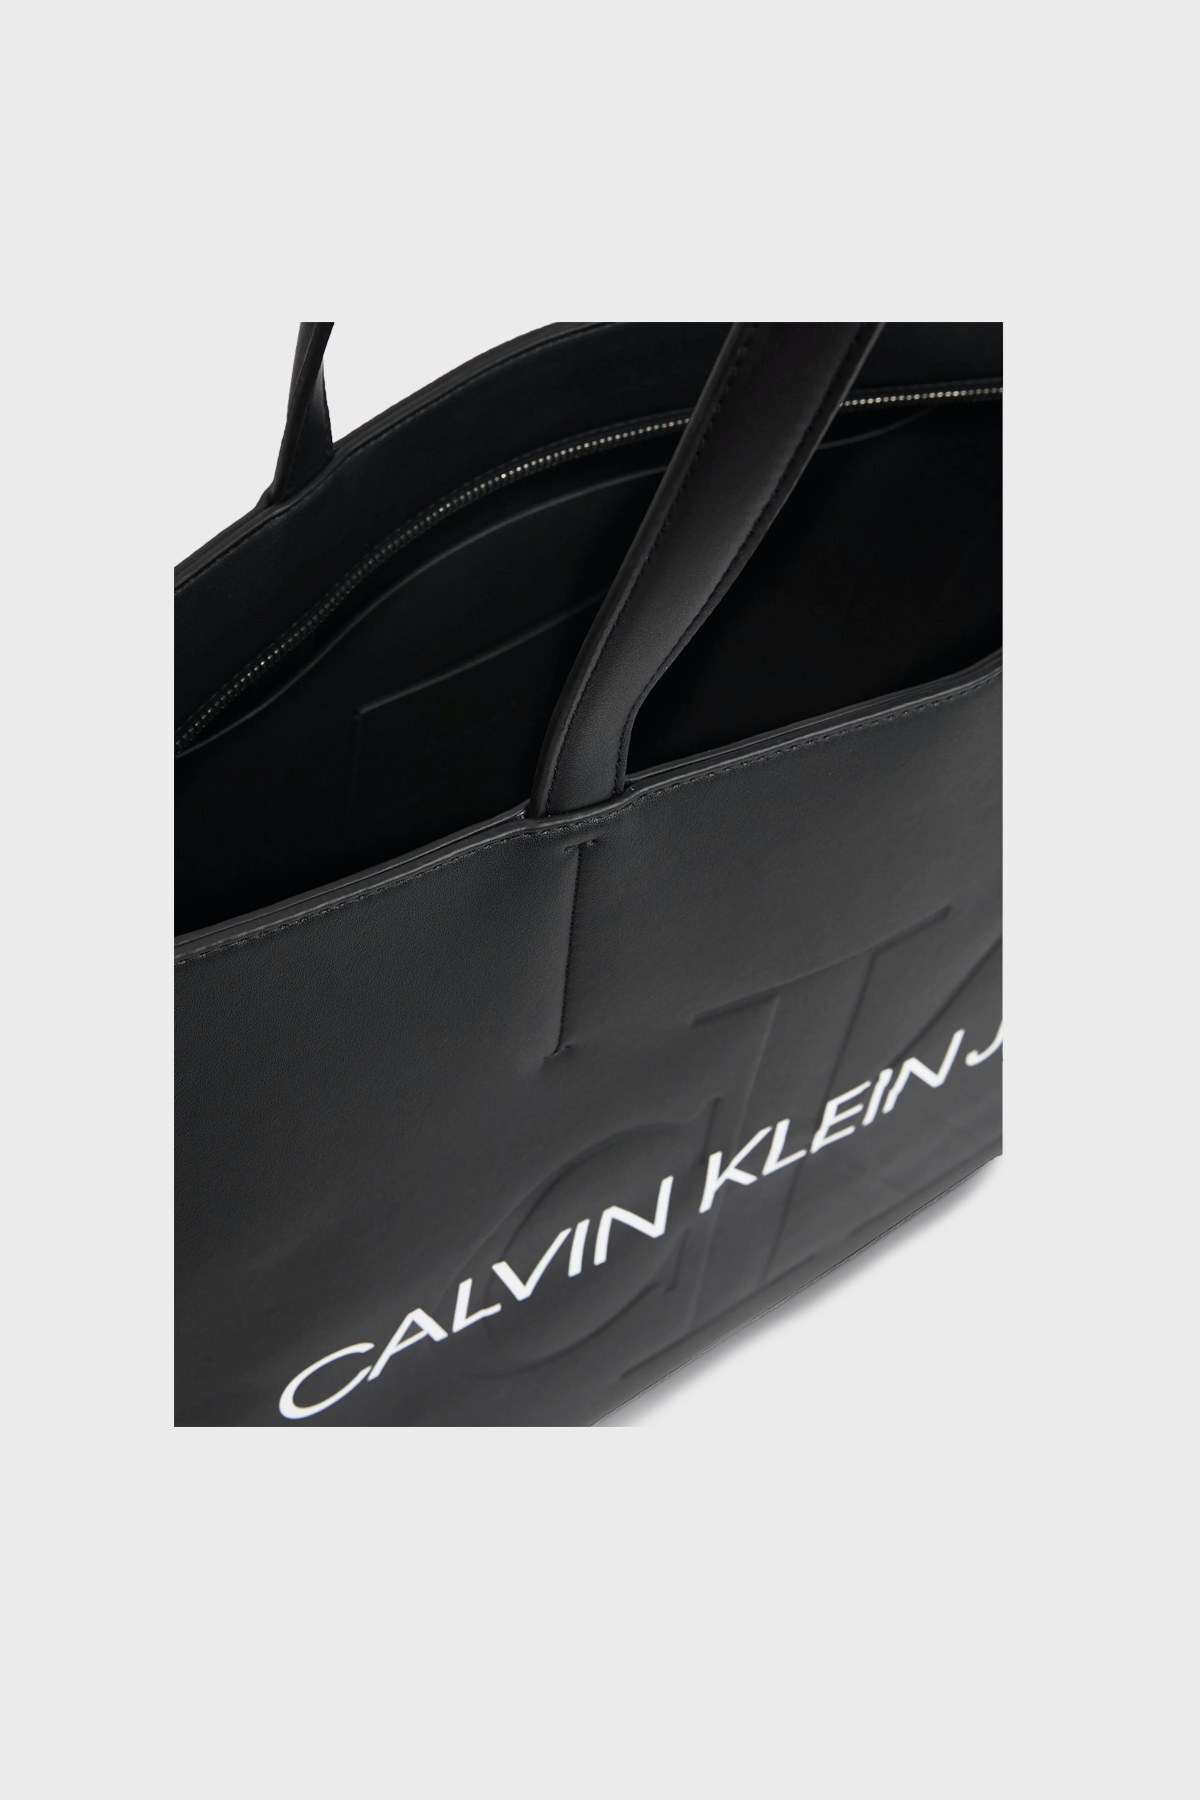 Calvin Klein Fermuarlı Logo Detaylı Bayan Çanta K60K607200 BDS SİYAH